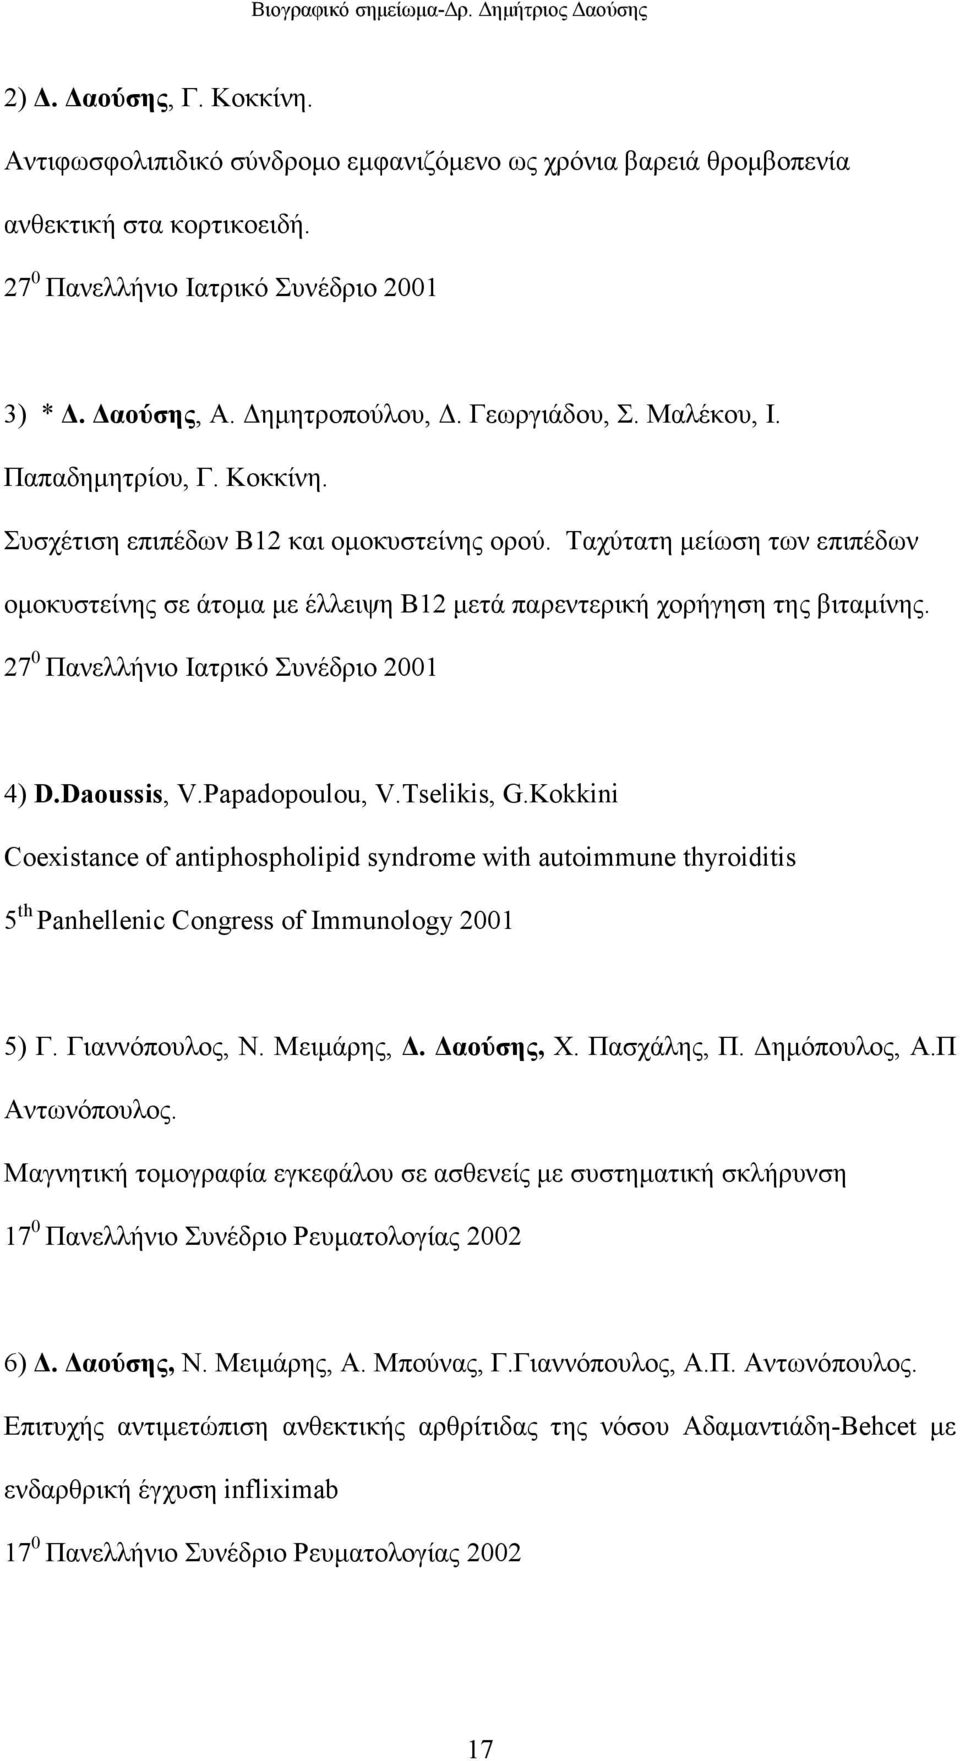 Ταχύτατη µείωση των επιπέδων οµοκυστείνης σε άτοµα µε έλλειψη Β12 µετά παρεντερική χορήγηση της βιταµίνης. 27 0 Πανελλήνιο Ιατρικό Συνέδριο 2001 4) D.Daoussis, V.Papadopoulou, V.Tselikis, G.